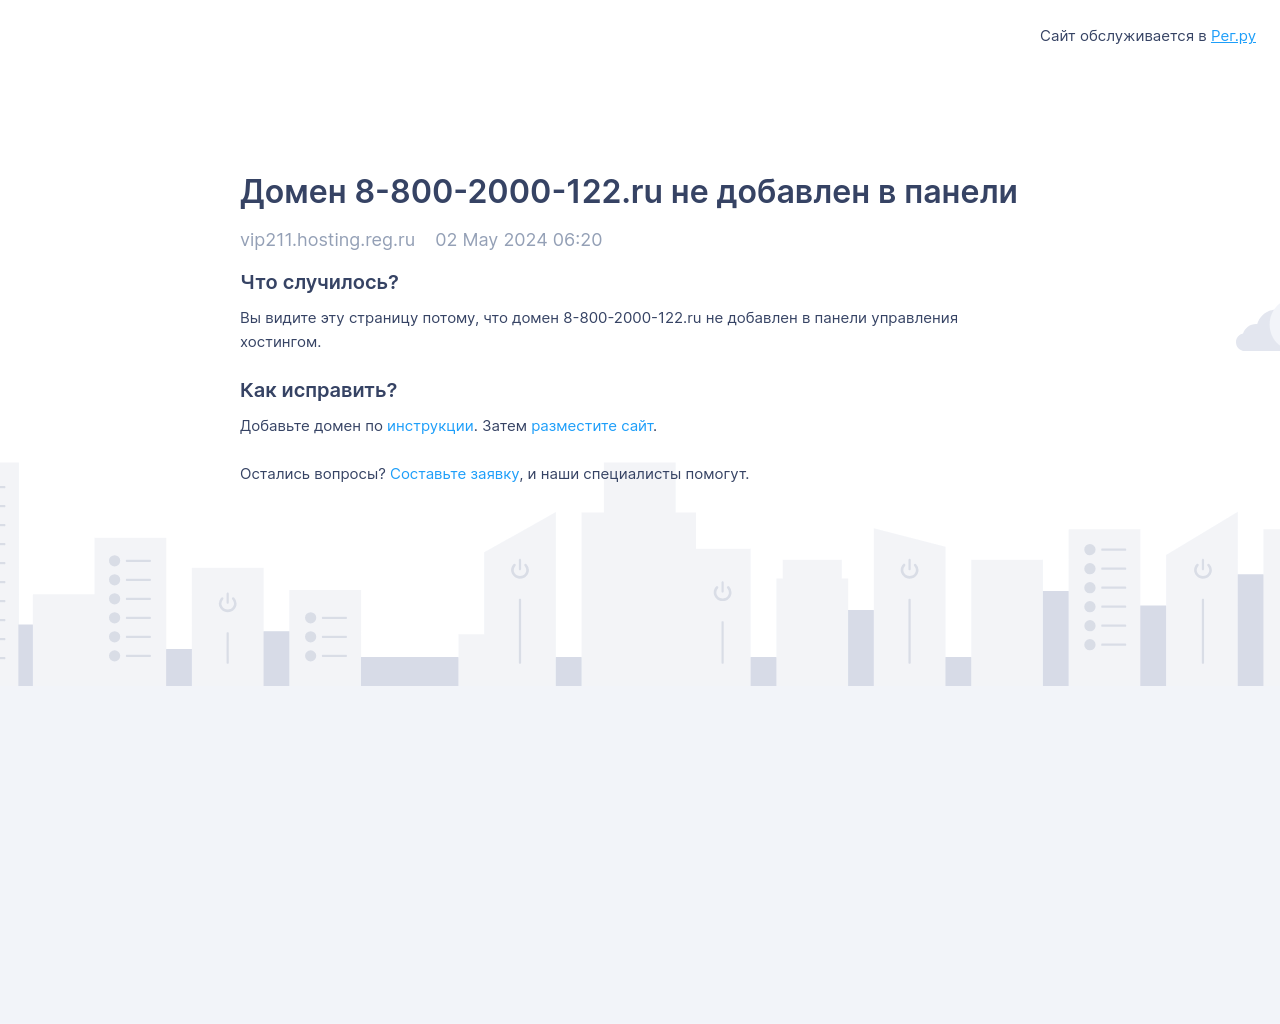 8-800-2000-122.ru